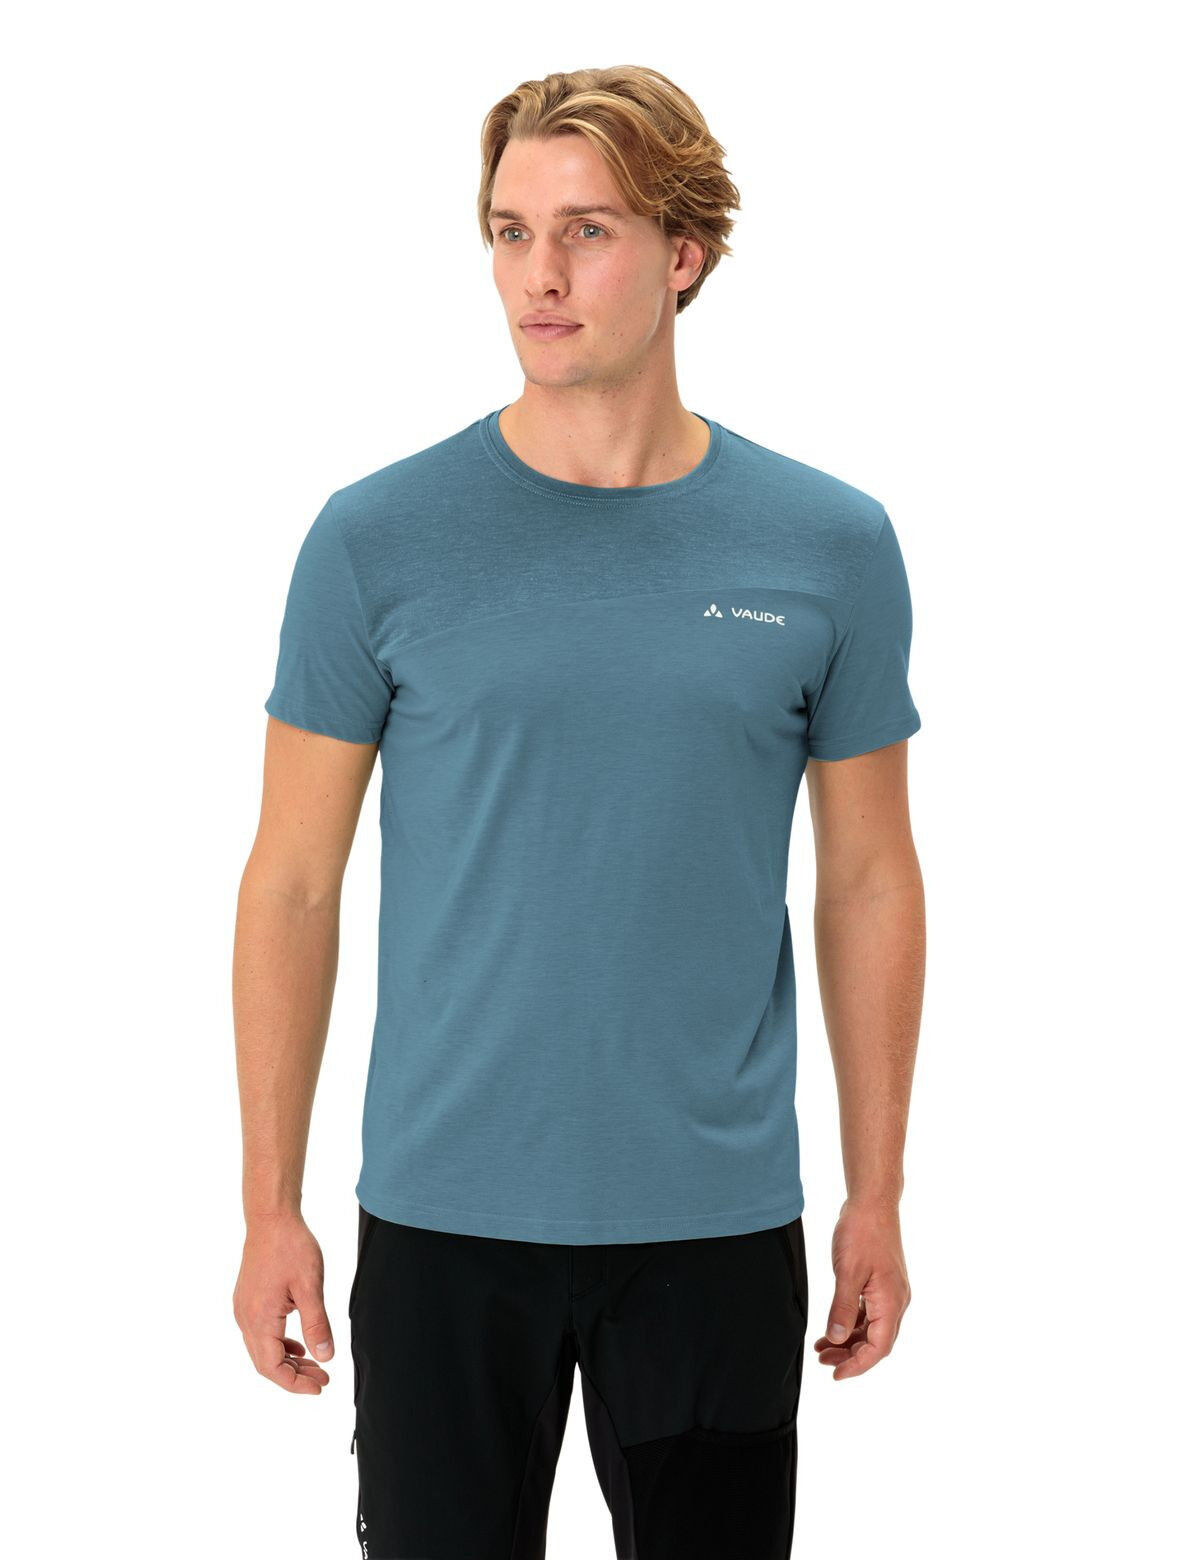 Vaude - Sveit T-Shirt - T-Shirt - Men's